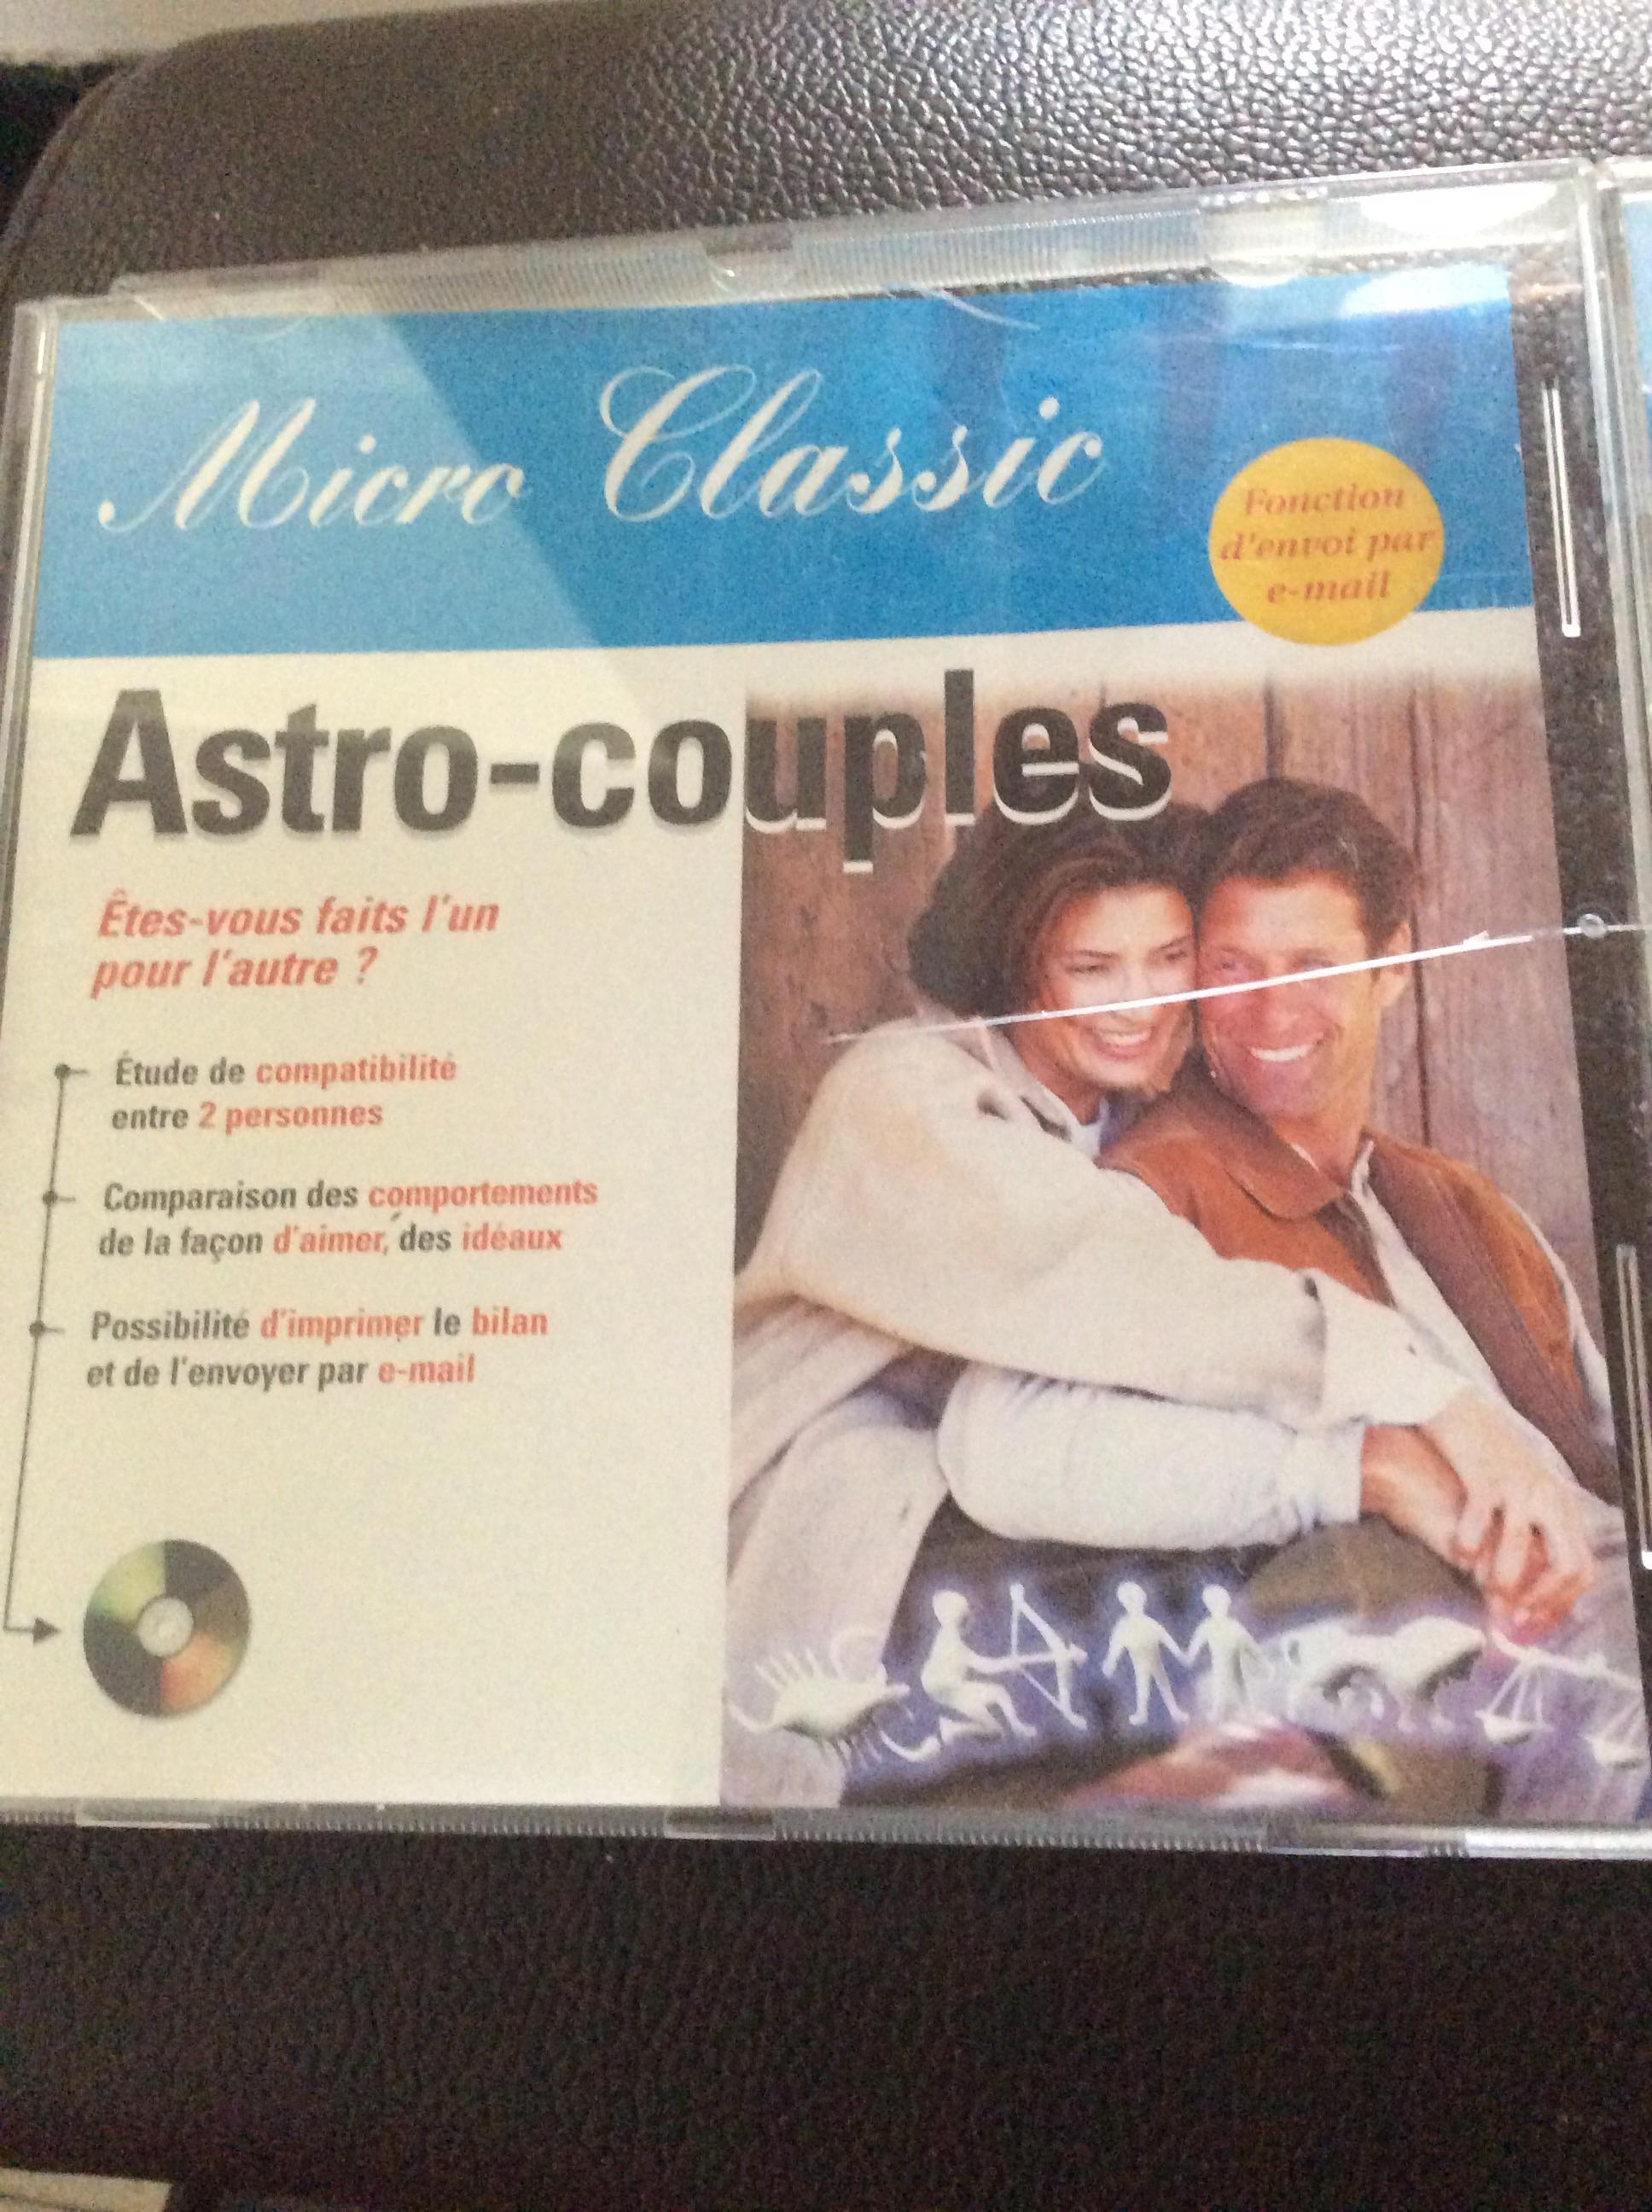 troc de troc cd-rom années 90 astro- couples windows 95 image 1